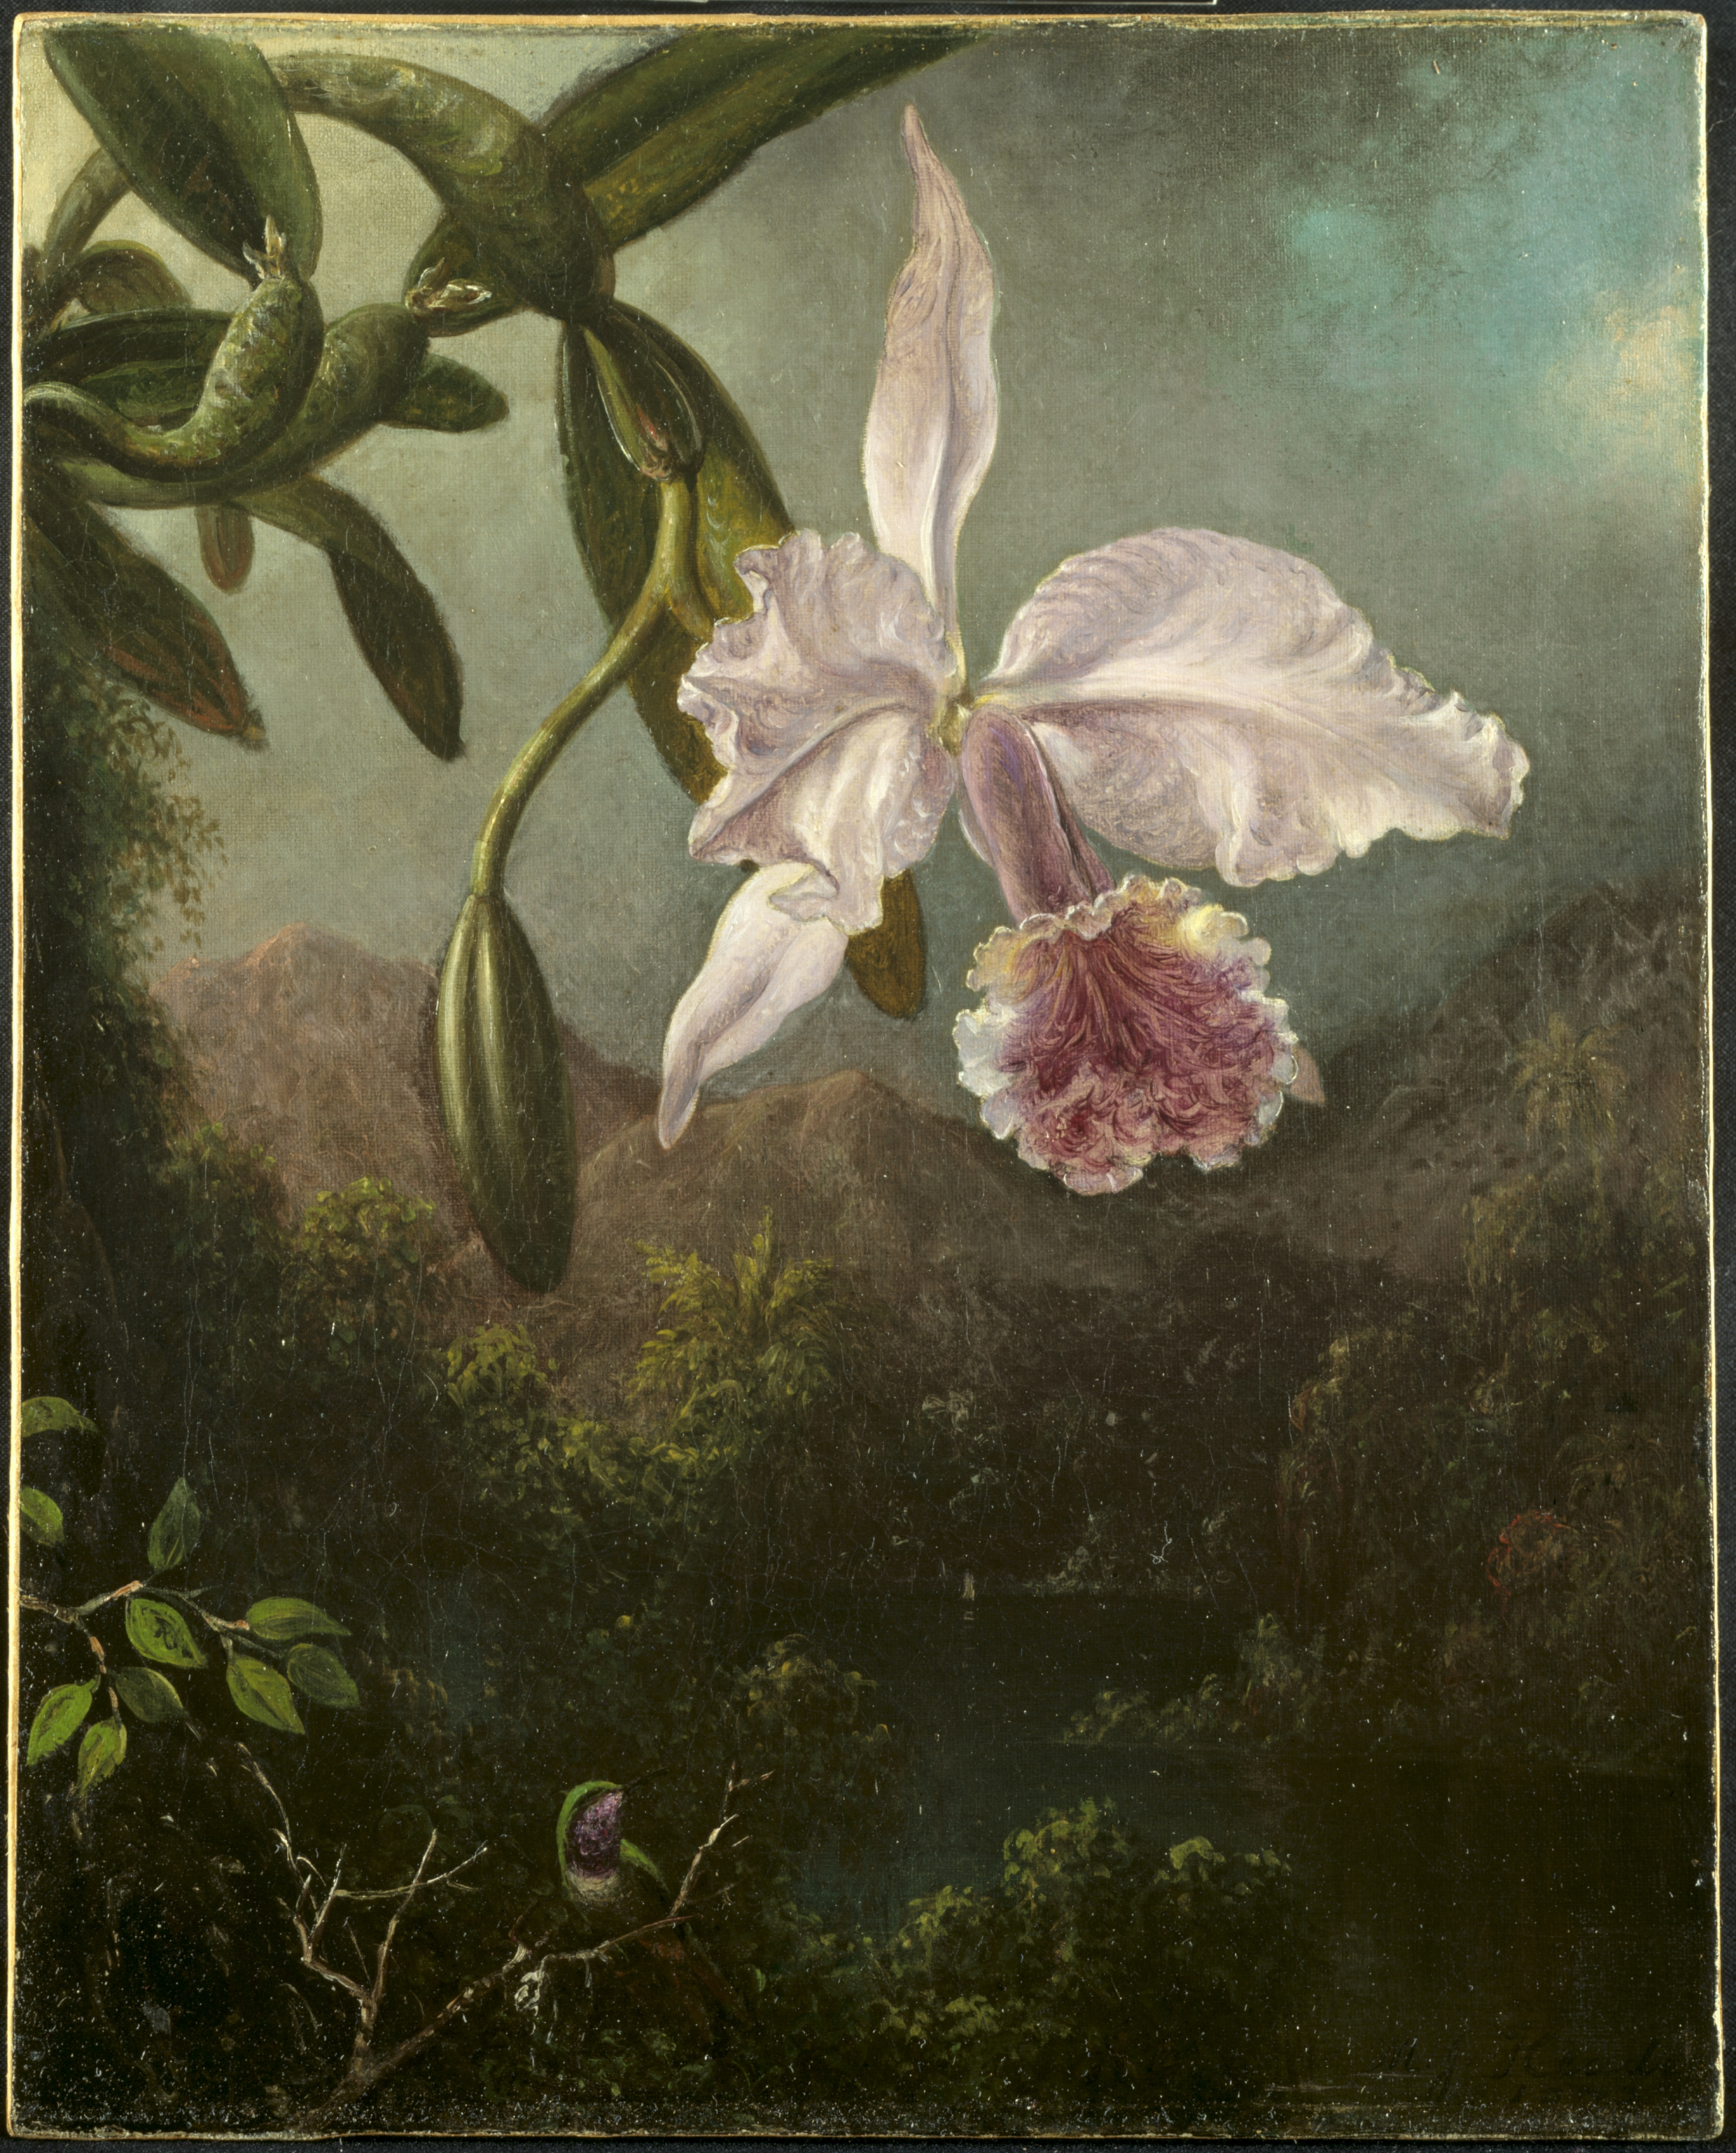 Orchideenblüten by Martin Johnson Heade - 1873 - 47.6 x 40 cm Cleveland Museum of Art